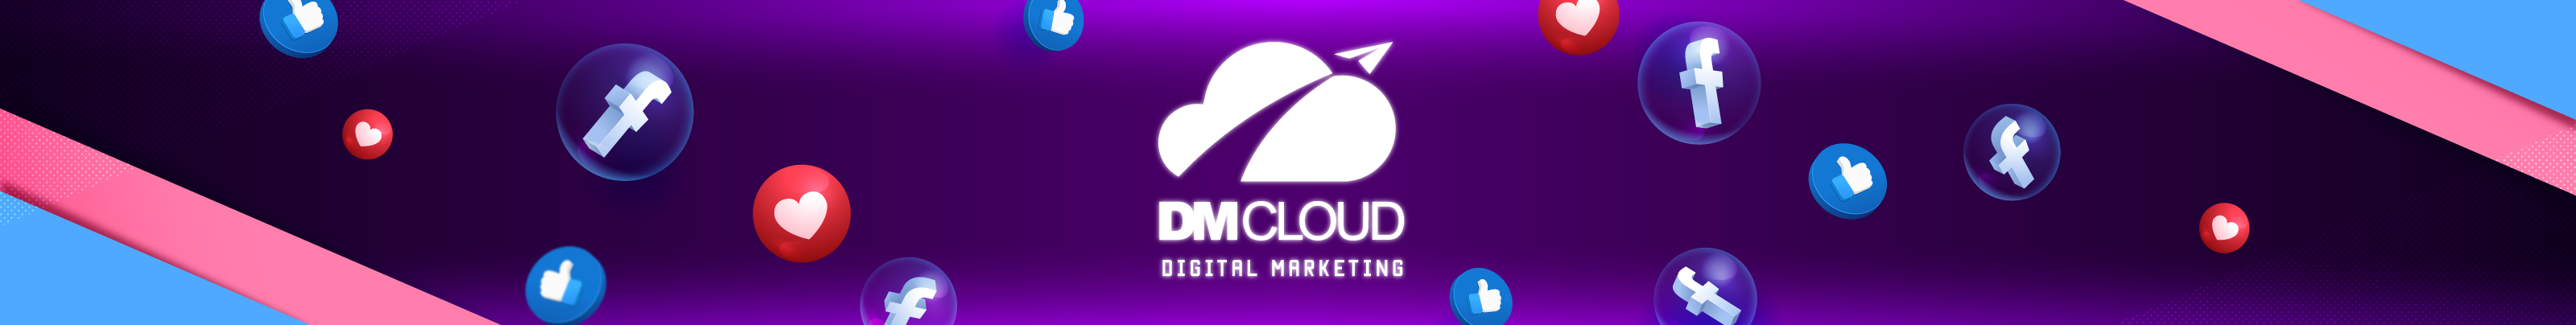 DM cloud's profile banner